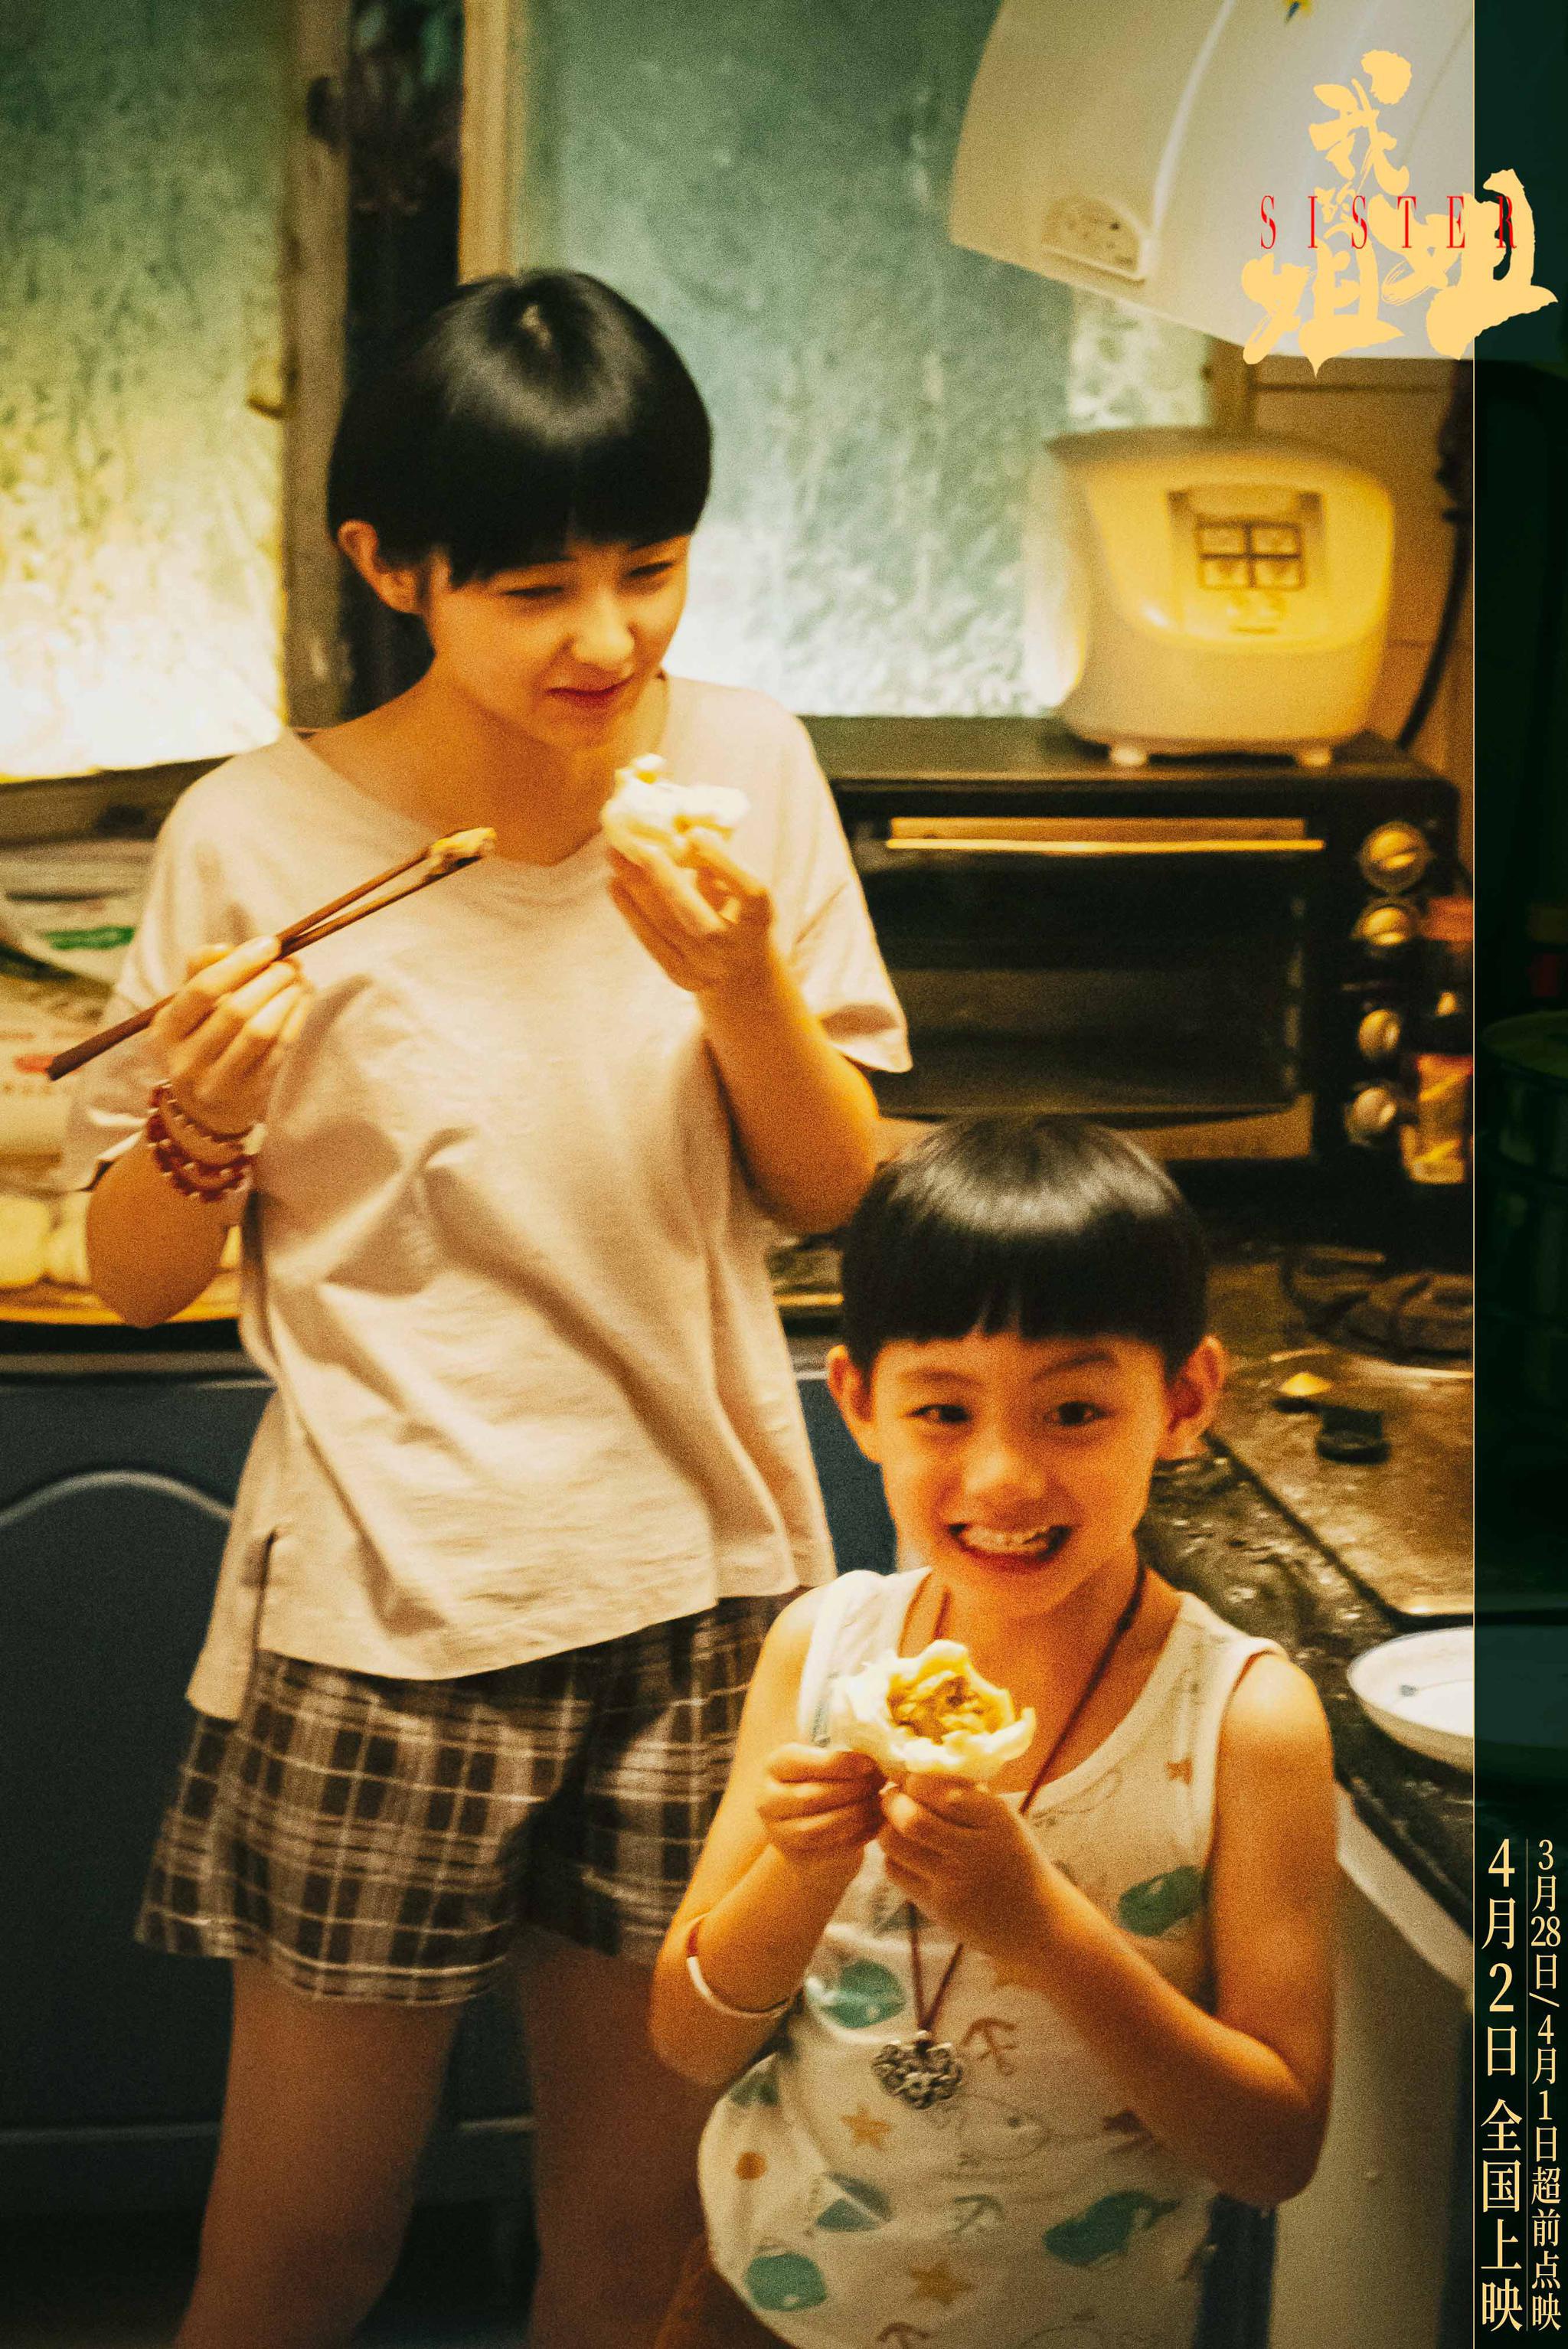 张子枫最新电影《我的姐姐》释出新海报 领衔主演现实题材引期待 - 360娱乐，你开心就好